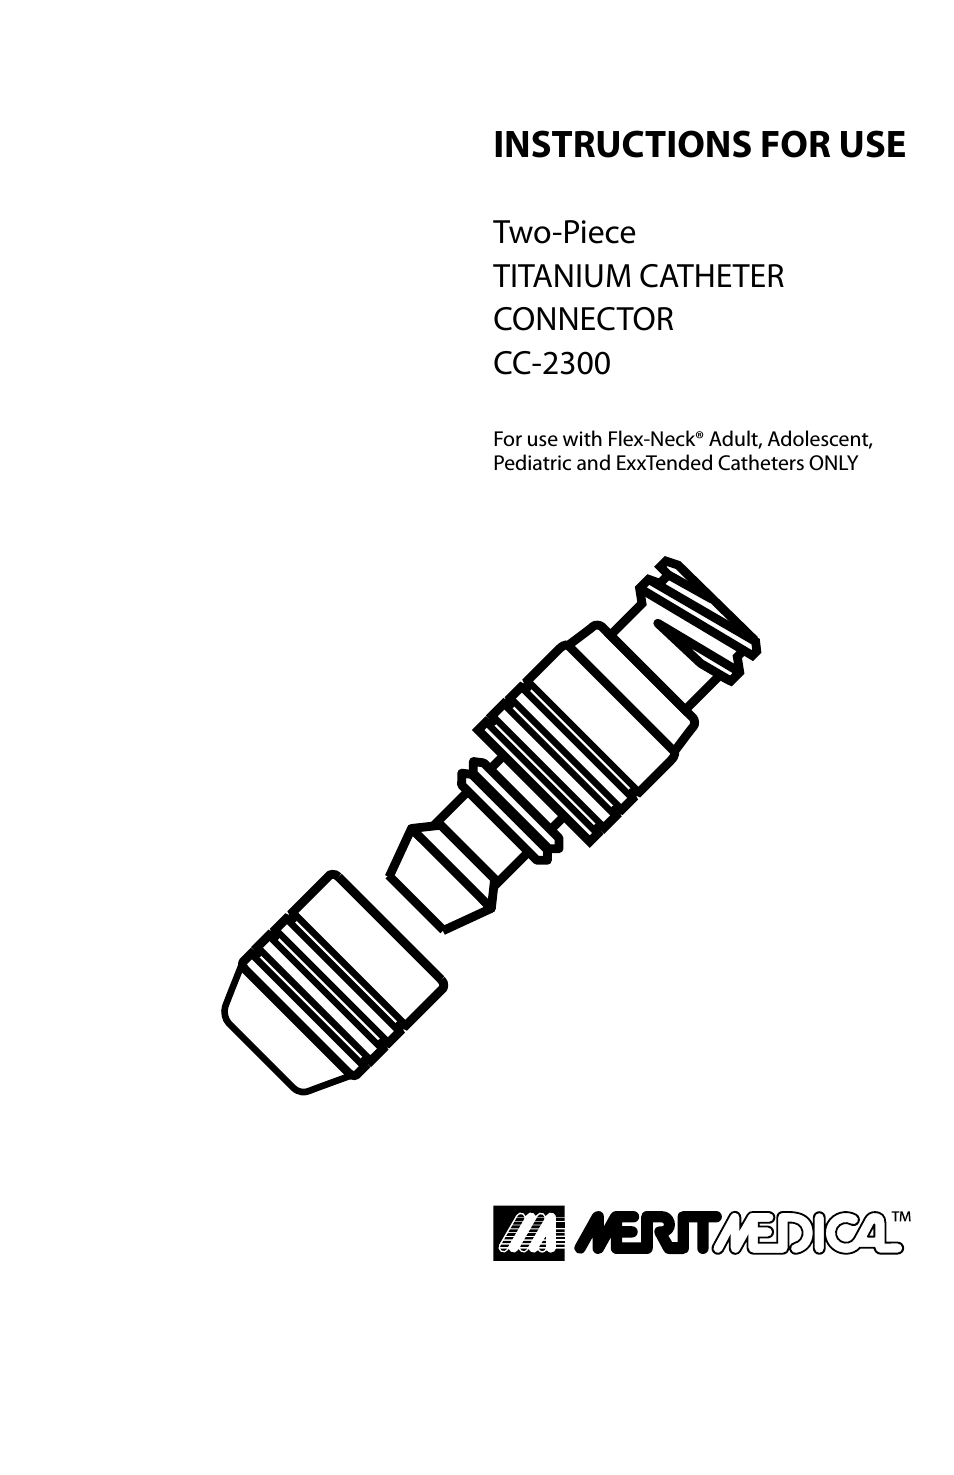 Titanium Catheter Connector